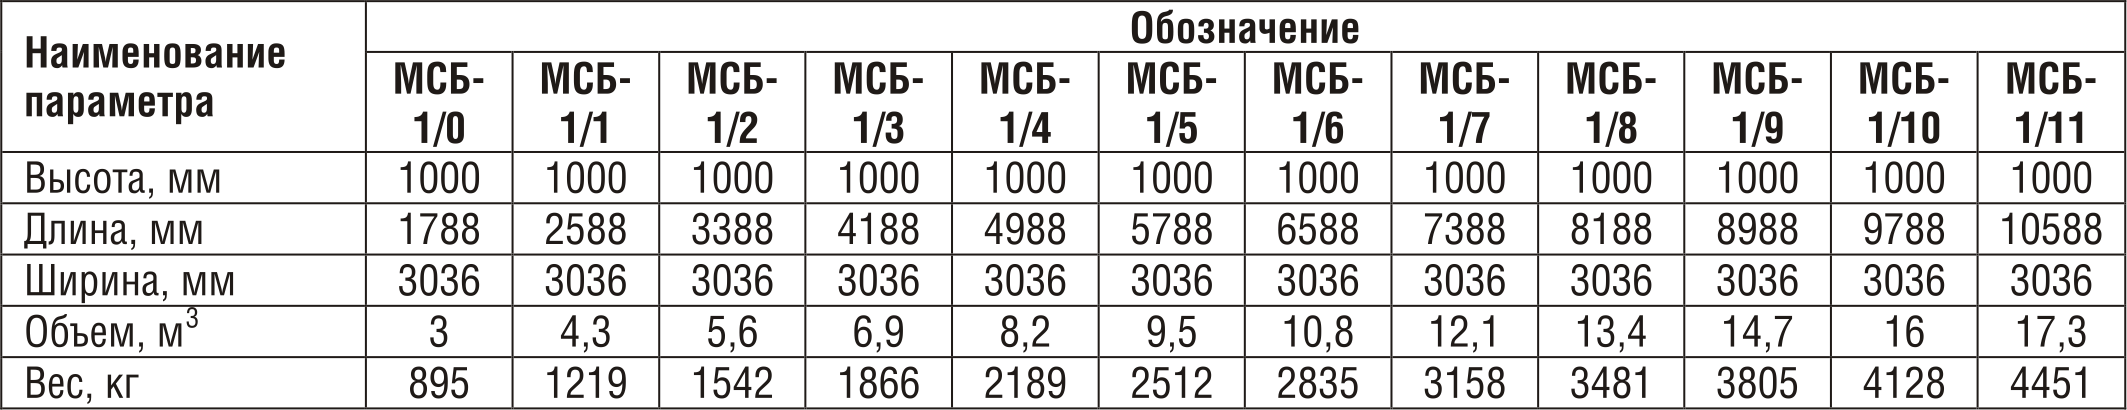 Бак фекальный МСБ-1/0 (секция приемная - 1шт., секция торцевая - 1 шт.) Серия 07.900-2